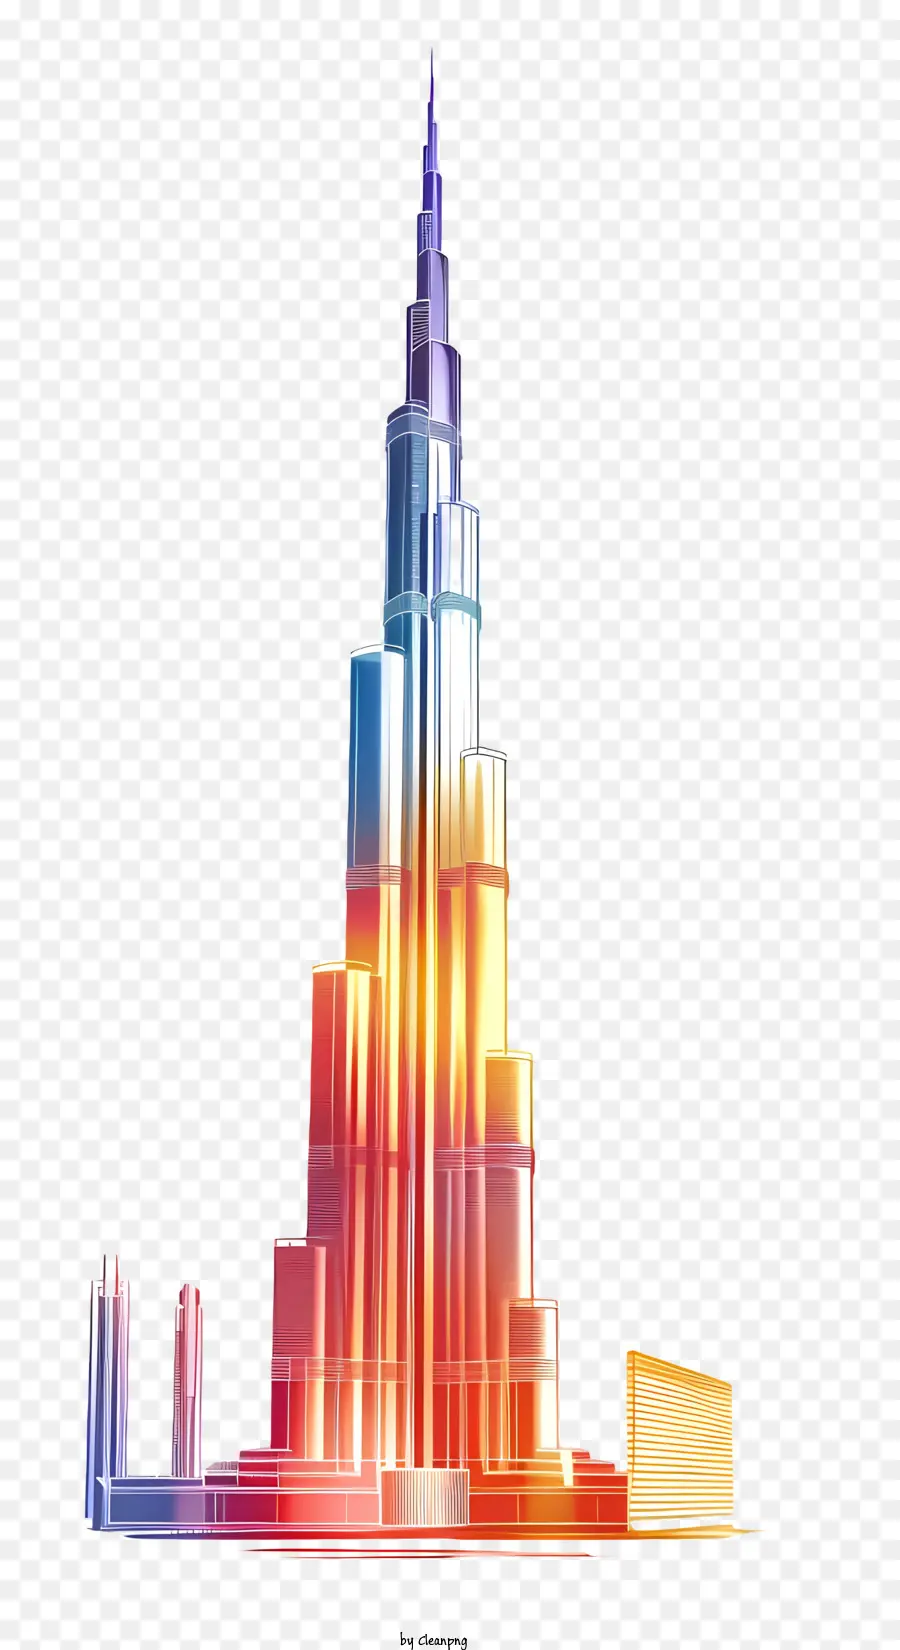 Burj Khalifa Burj Khalifa Tòa nhà cao nhất trên đồng hồ cấu trúc kim loại thế giới - Skyline thành phố hiện đại, sôi động với tòa nhà cao nhất